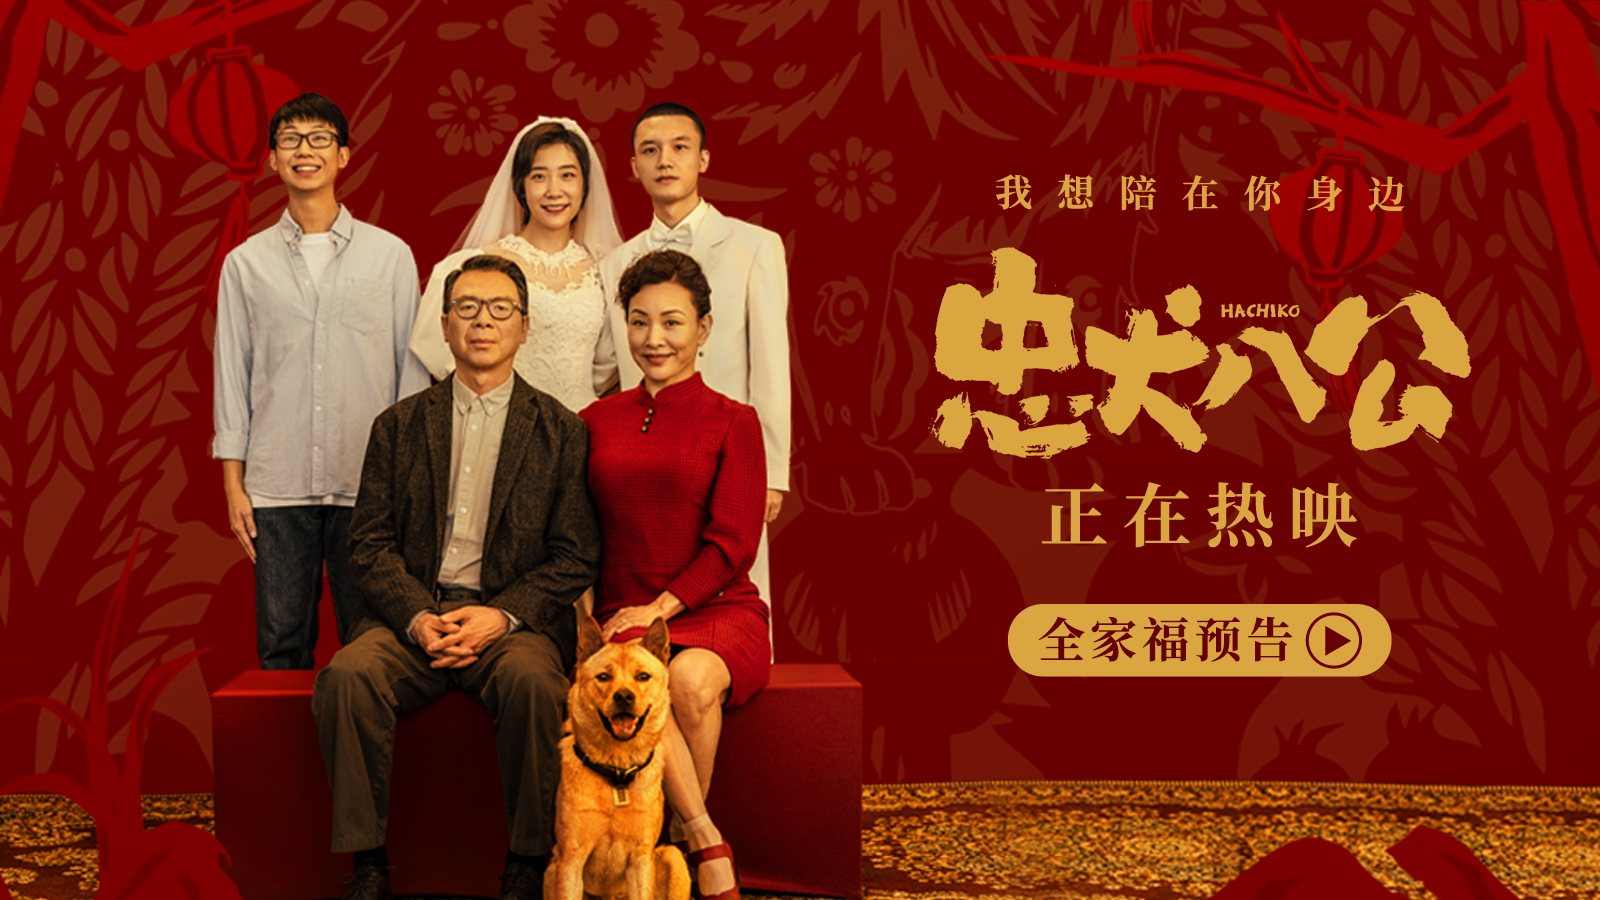 中国版《忠犬八公》曝全新预告海报 观众真情实感促口碑逆袭